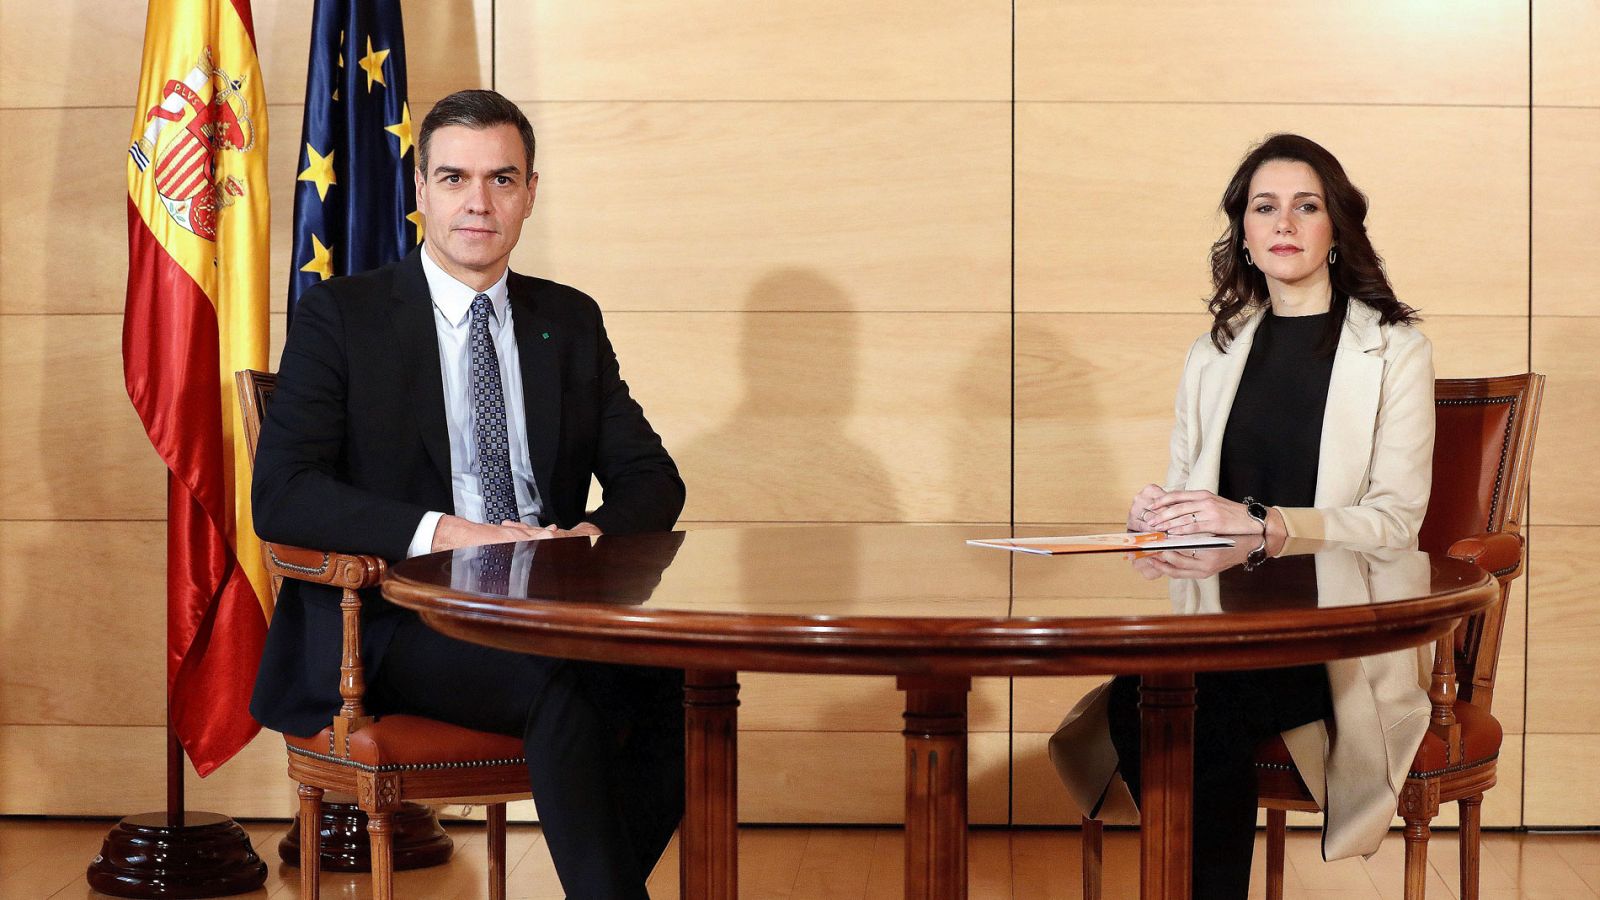 Arrimadas ofrece un acuerdo "constitucionalista" con cuatro puntos para un Gobierno "moderado" - RTVE.es